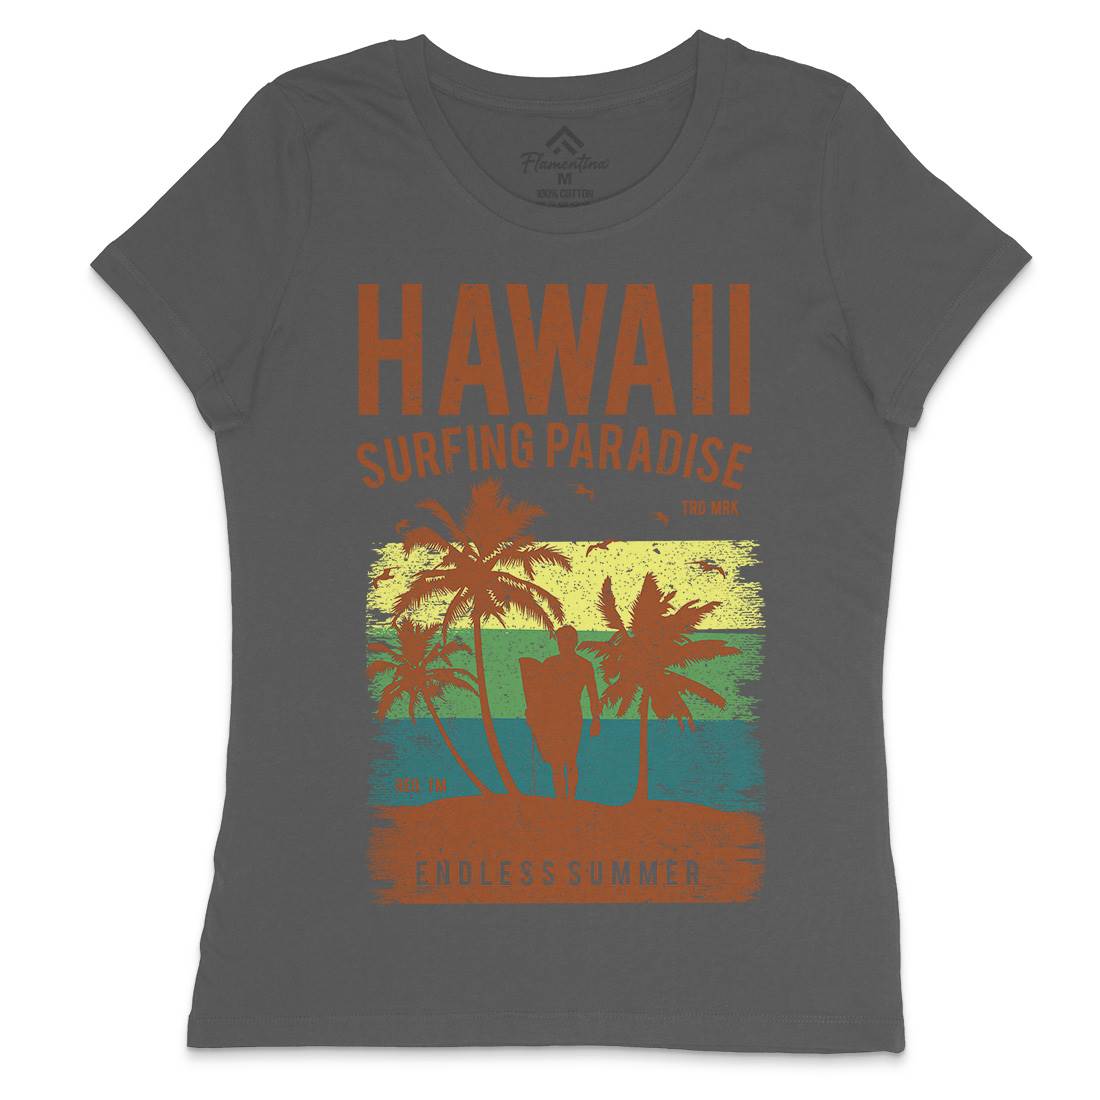 Hawaii Surfing Womens Crew Neck T-Shirt Surf A682